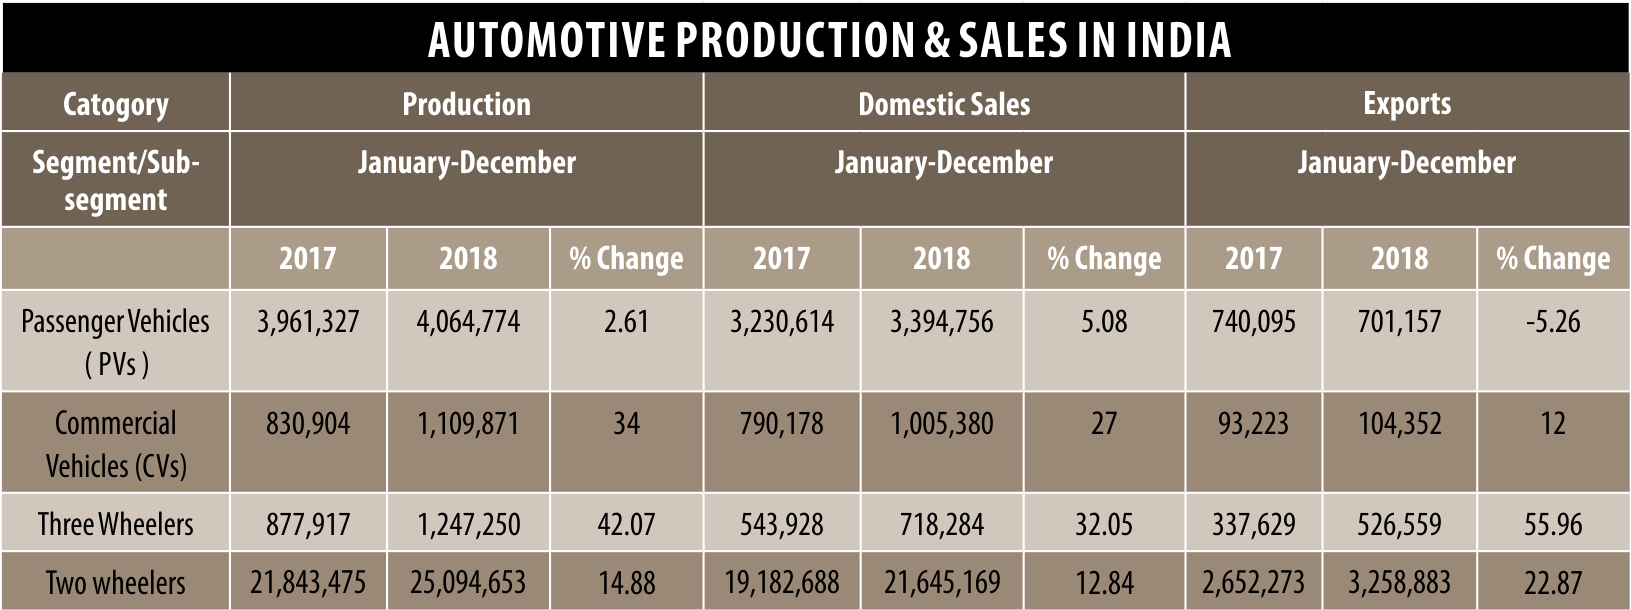 Automotive production